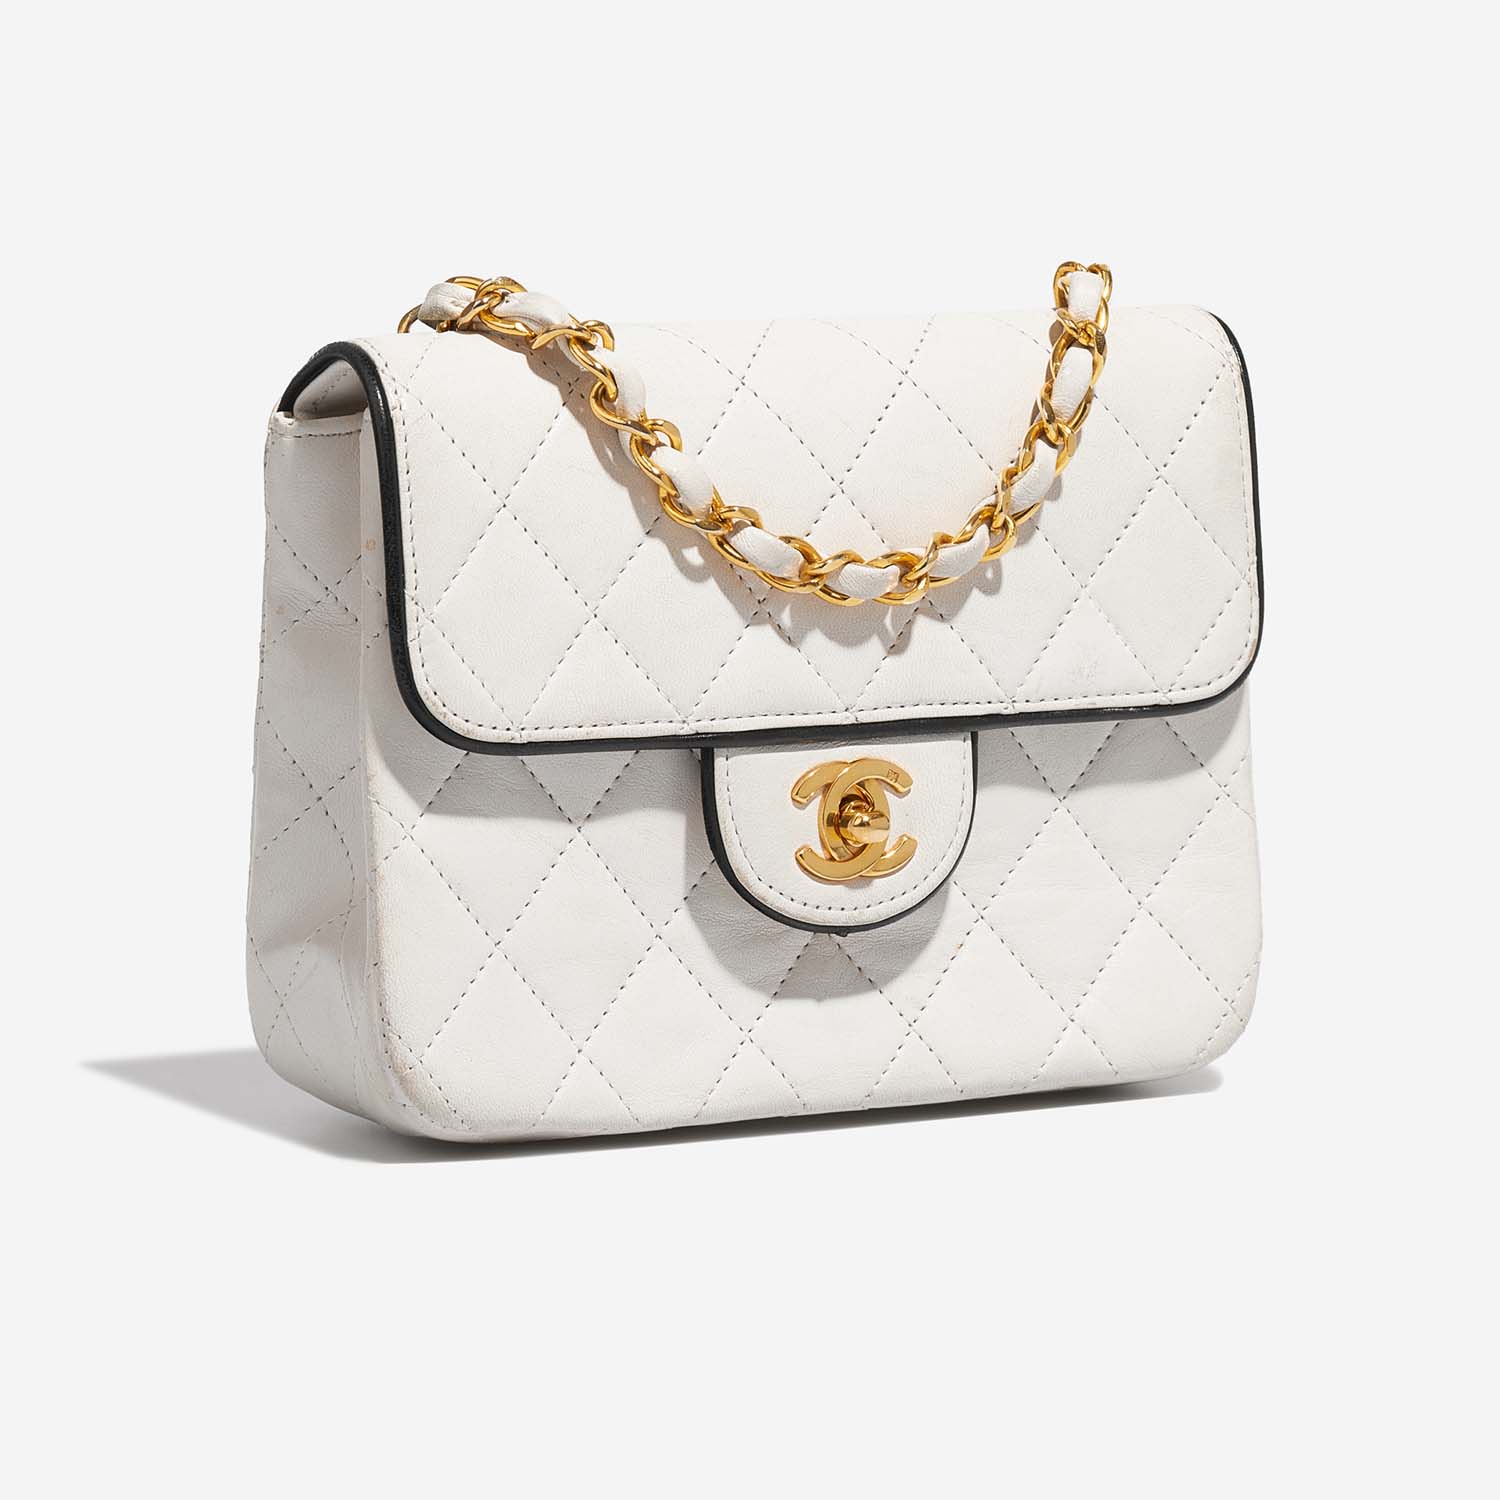 Chanel Timeless MiniSquare White Side Front | Verkaufen Sie Ihre Designer-Tasche auf Saclab.com